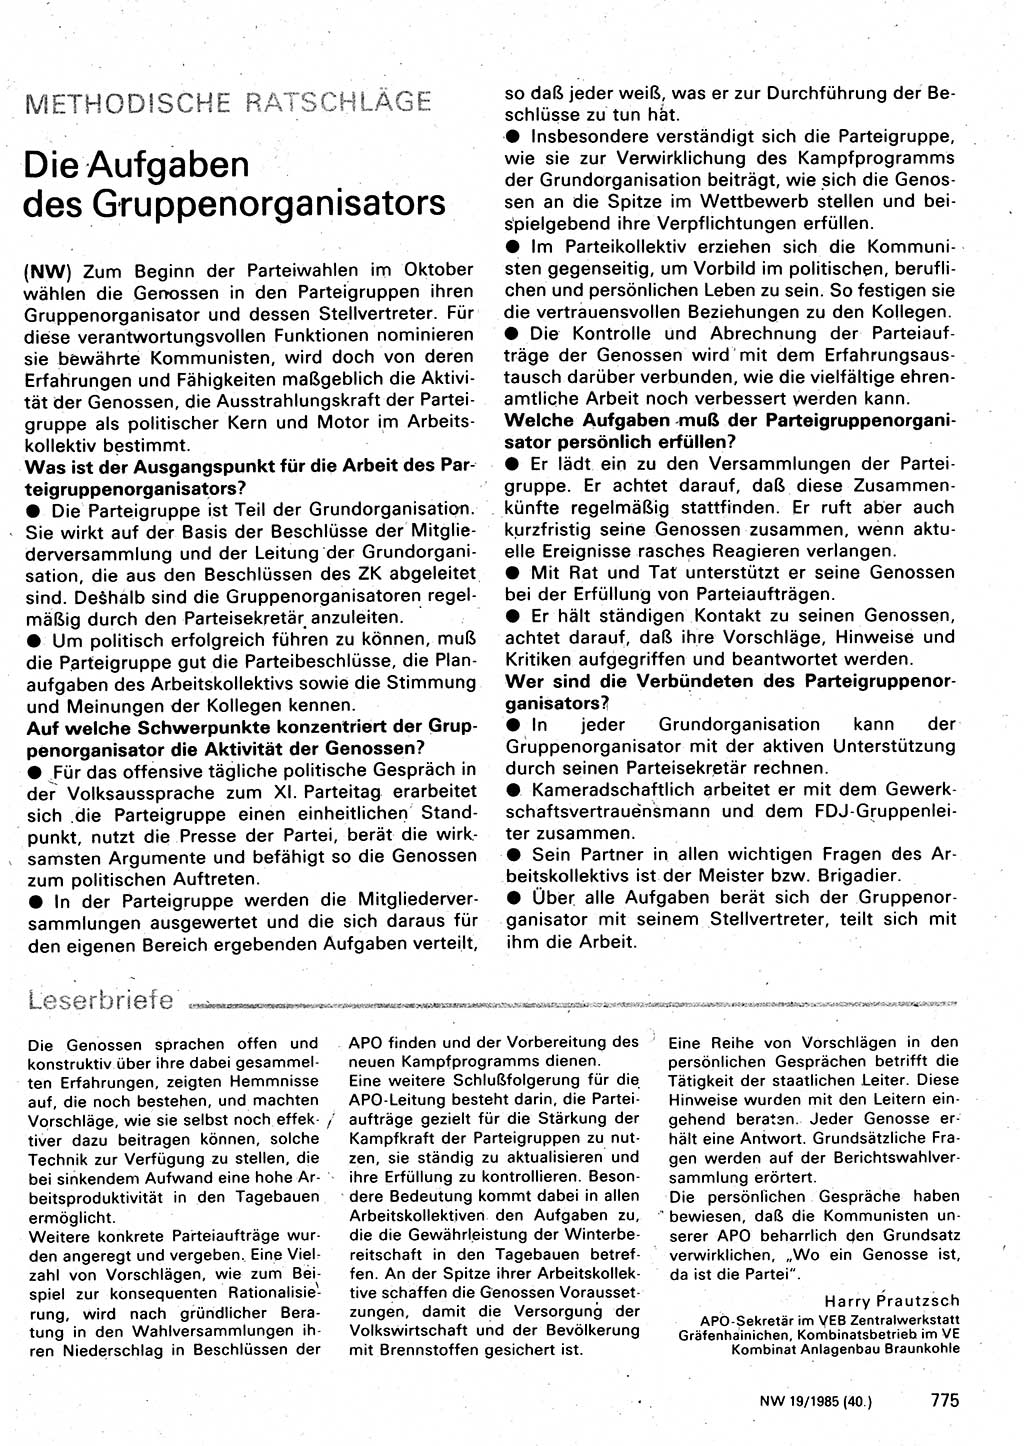 Neuer Weg (NW), Organ des Zentralkomitees (ZK) der SED (Sozialistische Einheitspartei Deutschlands) für Fragen des Parteilebens, 40. Jahrgang [Deutsche Demokratische Republik (DDR)] 1985, Seite 775 (NW ZK SED DDR 1985, S. 775)